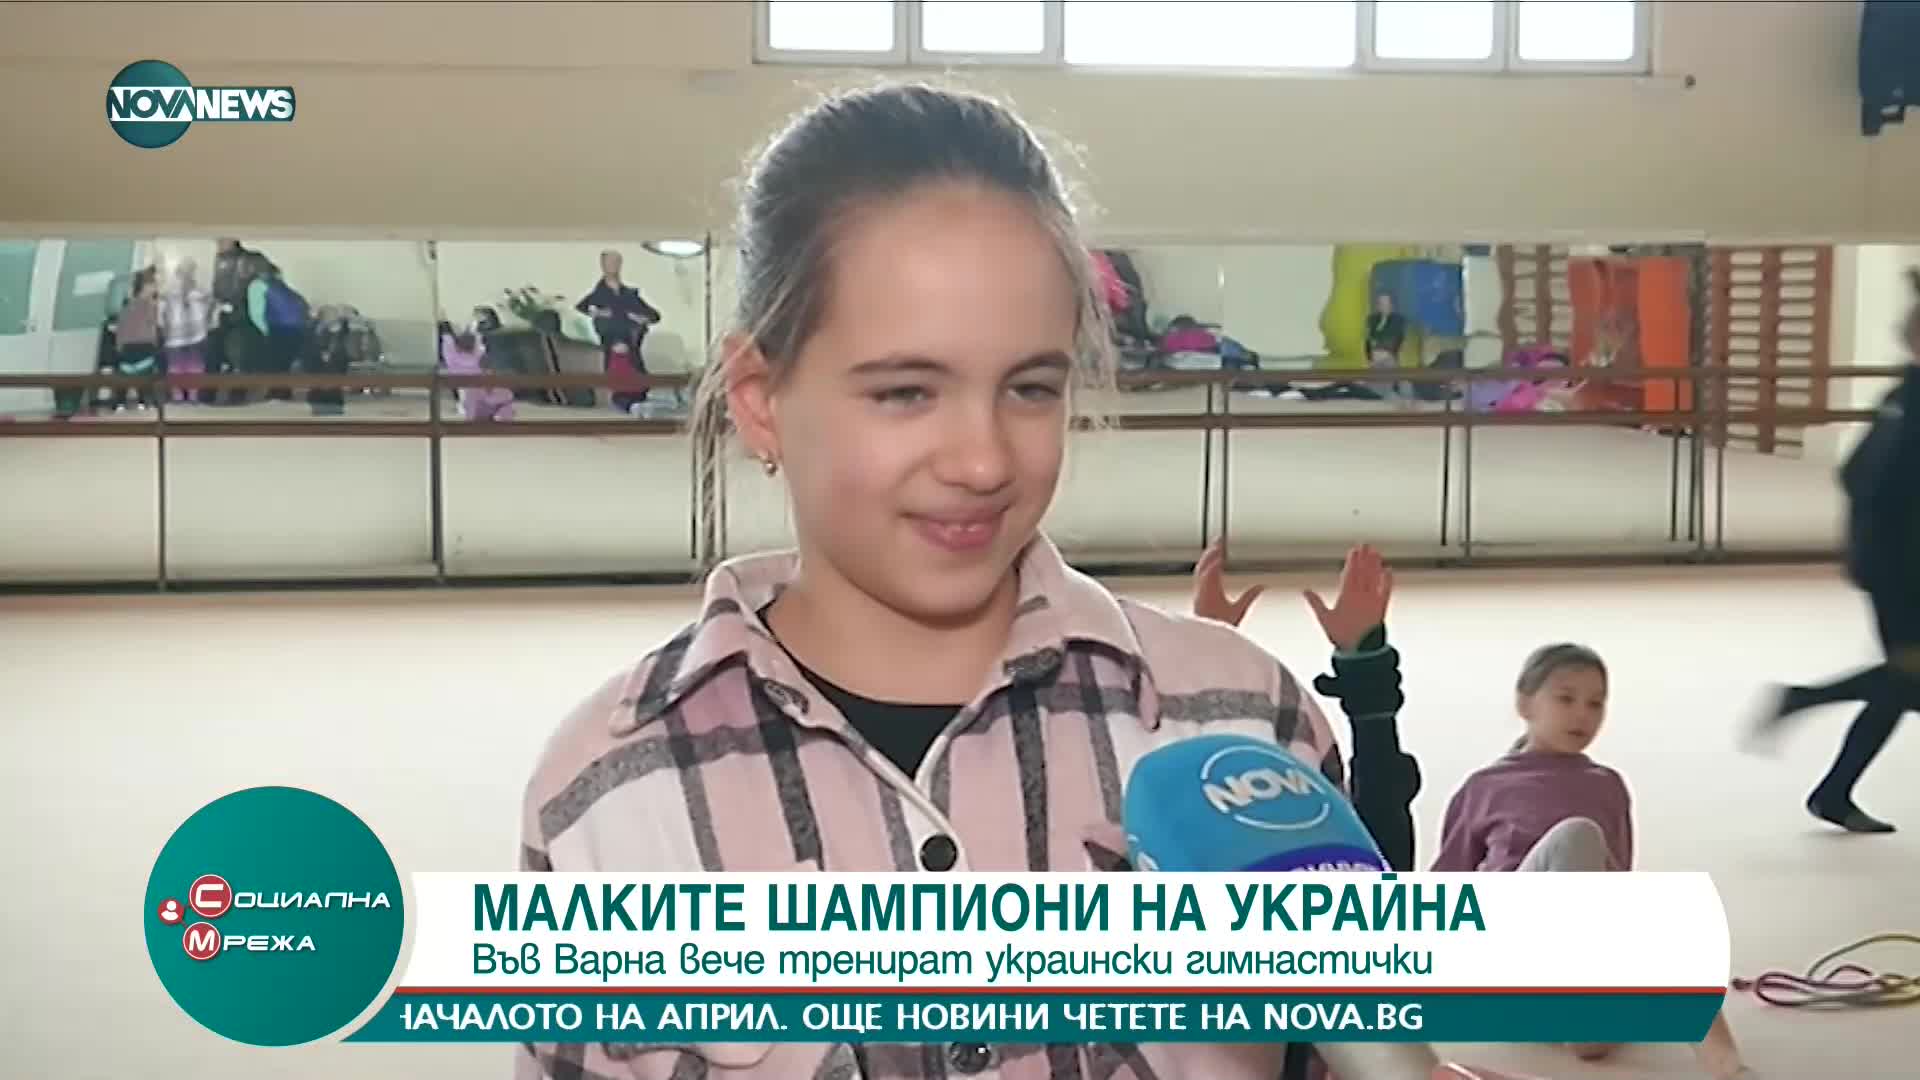 Спортен клуб във Варна отвори вратите си за украински гимнастички